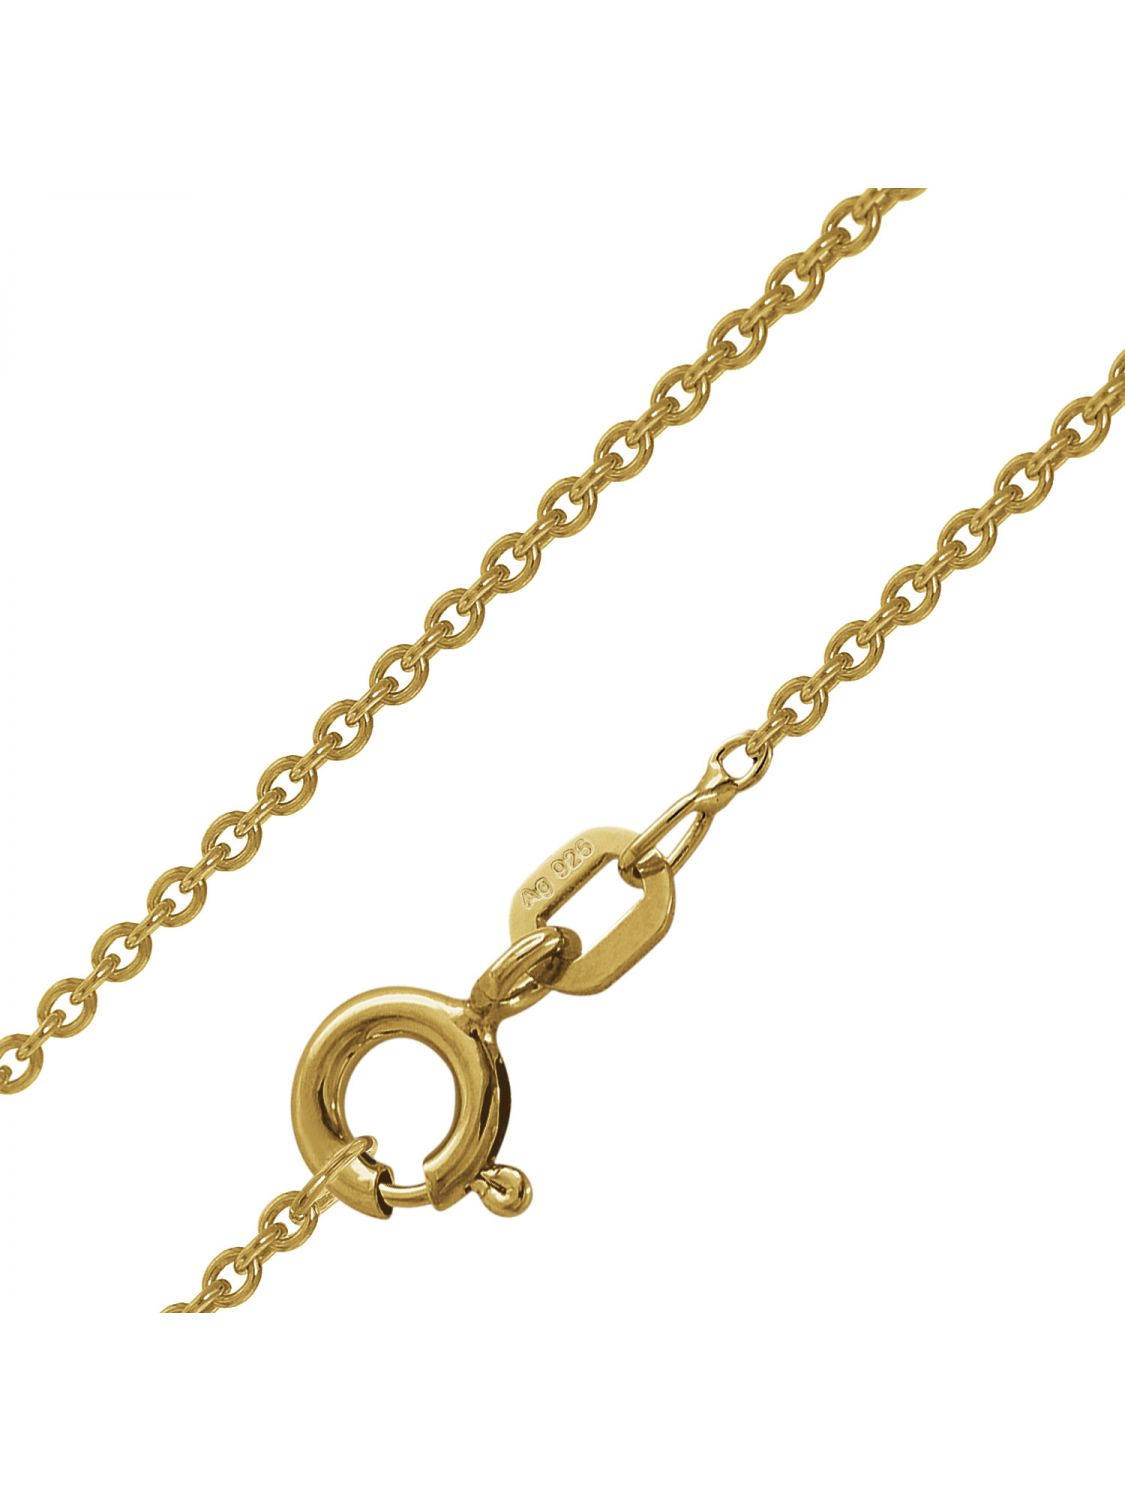 TRENDOR Schmuck Damen-Halskette mit Gingko-Anhänger Gold auf Silber 75720 